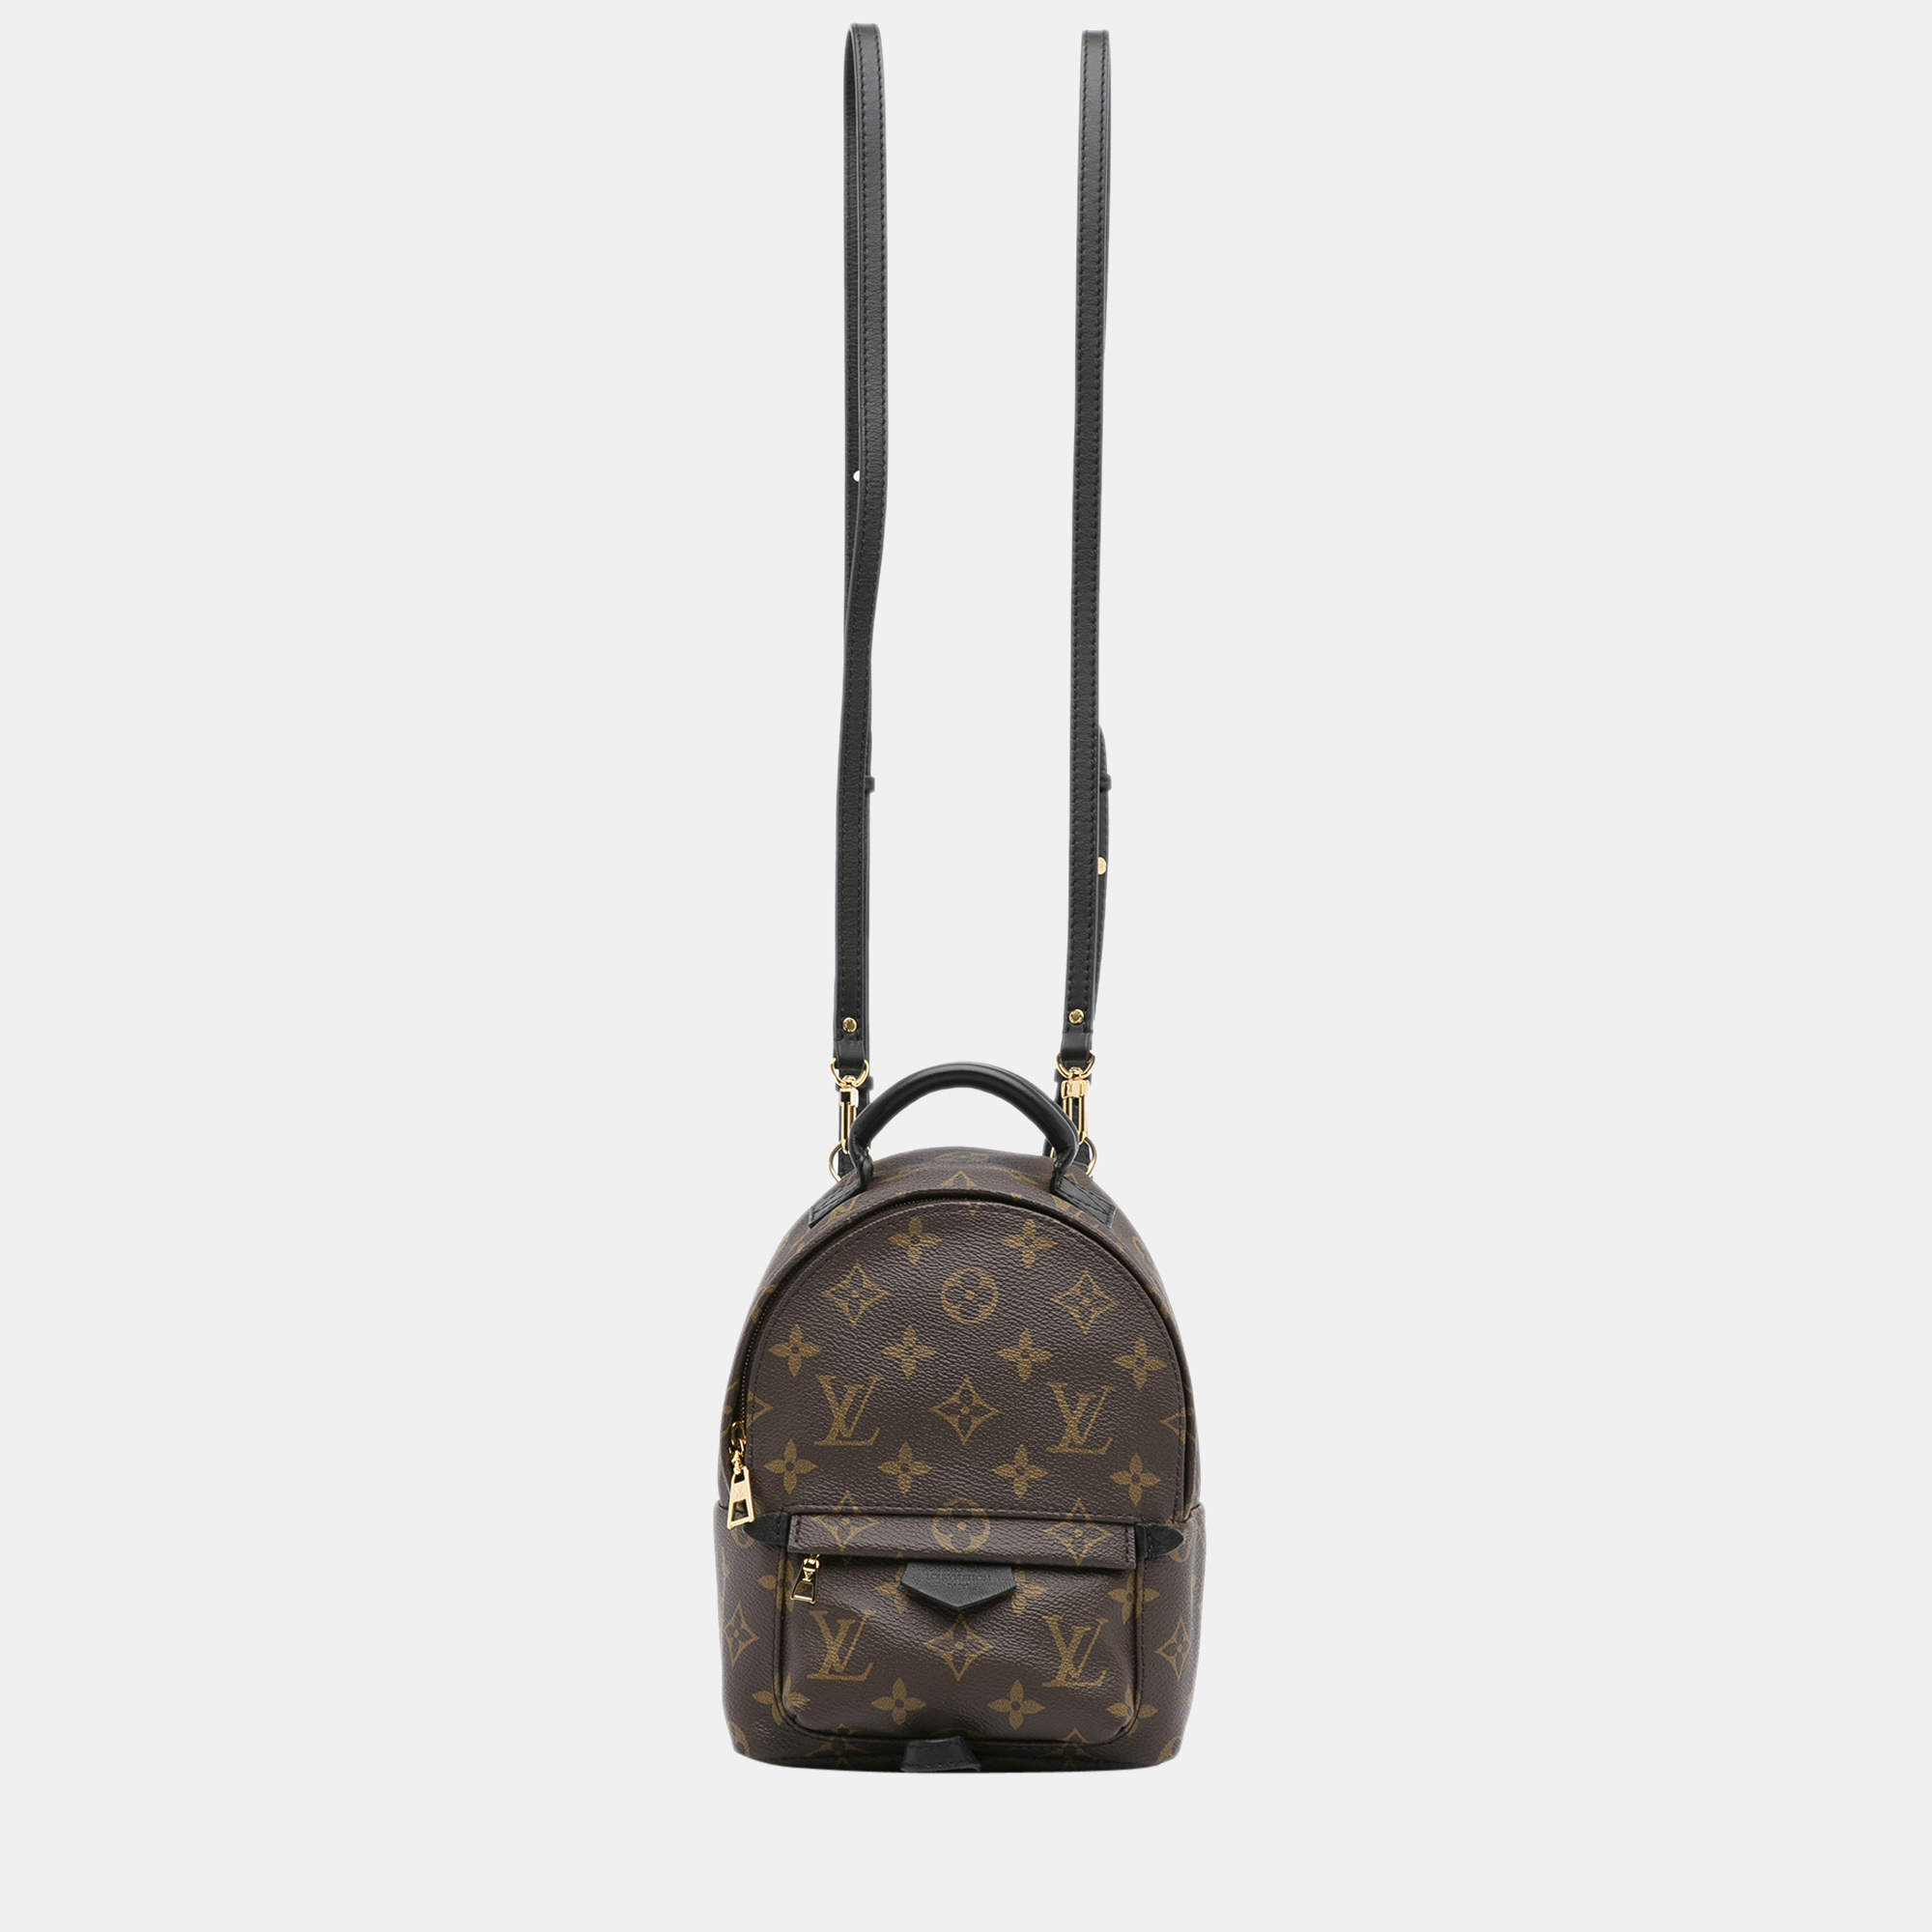 Lv Mini Backpack Palm Springs Price